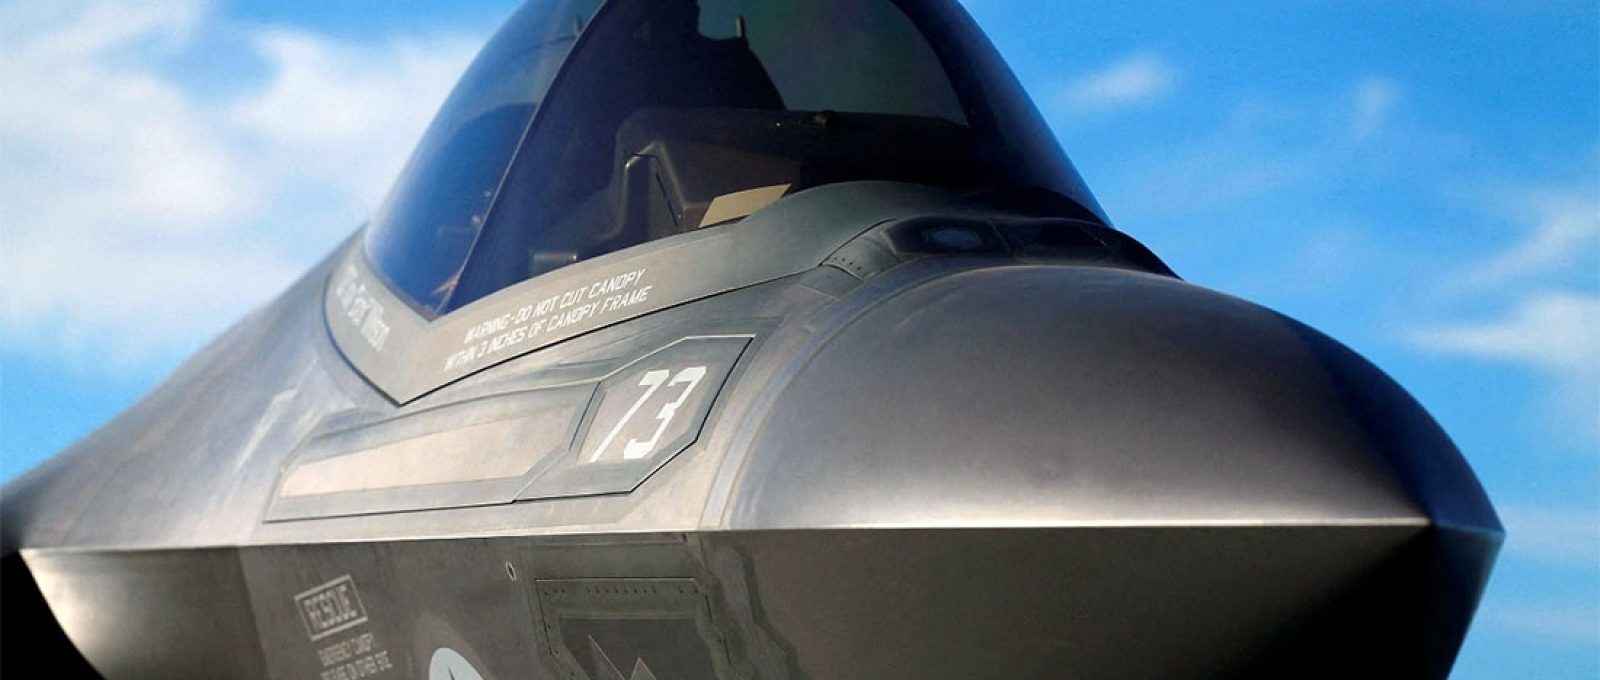 Caça Lockheed Martin F-35C no convés do porta-aviões USS Nimitz depois de fazer o primeiro pouso do avião usando o sistema de gancho de cauda, 3 de novembro de 2014 (Mike Blake/Reuters).